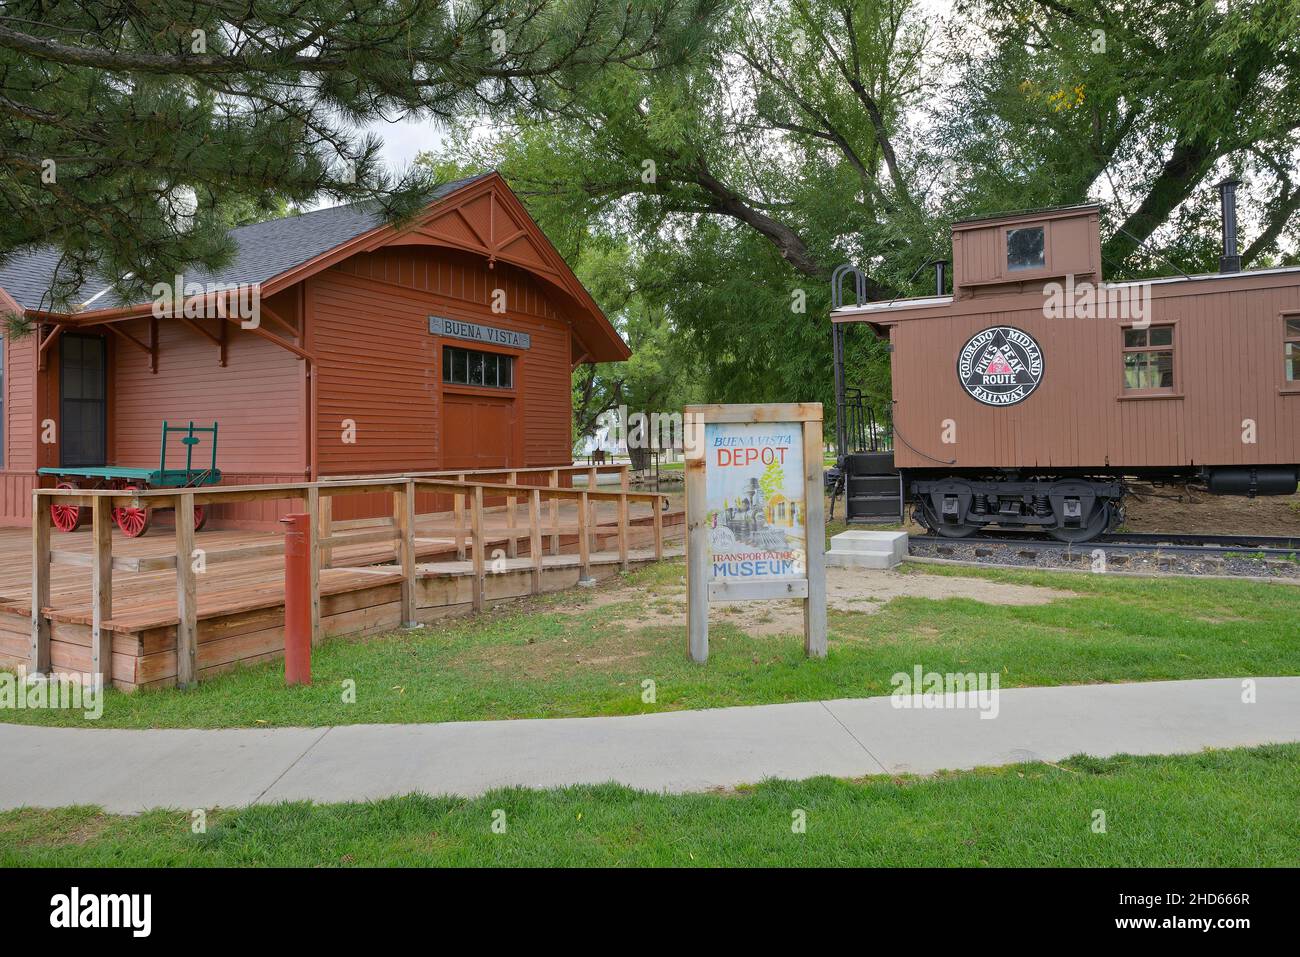 The historic railroad depot museum, Buena Vista CO Stock Photo